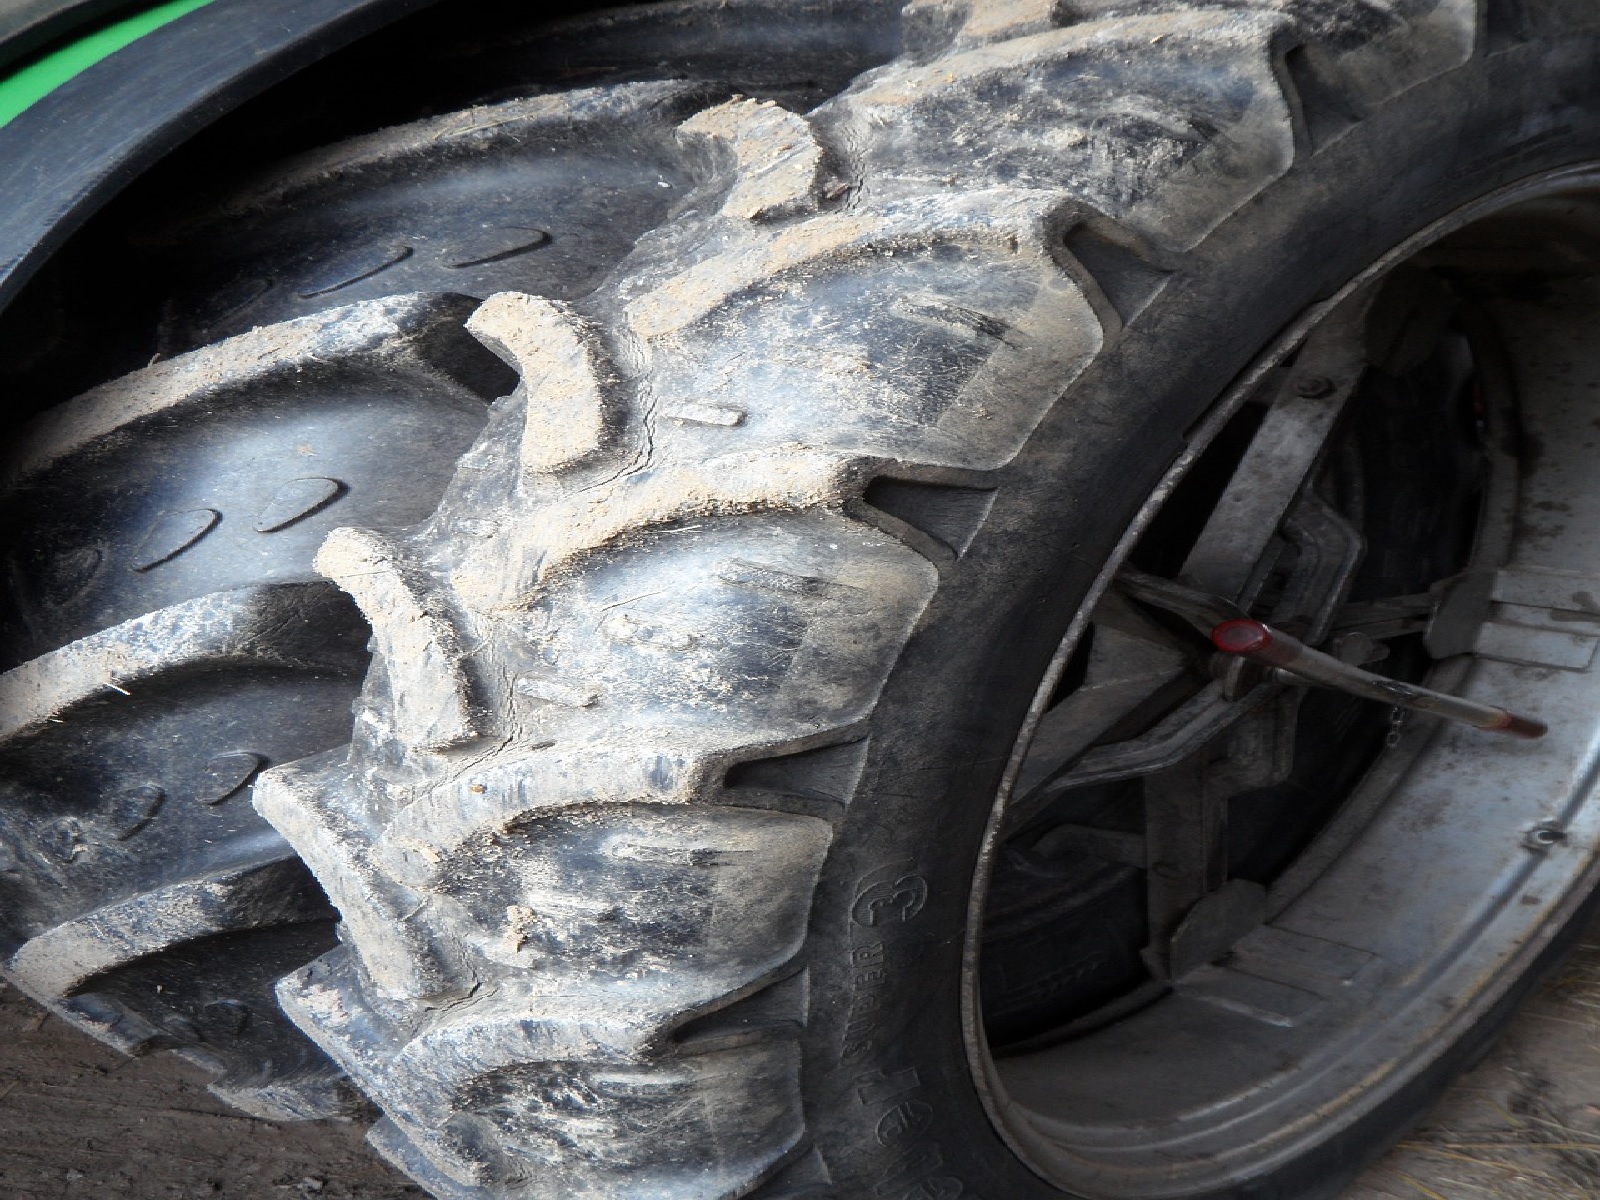 Eilmeldung: Traktor auer Kontrolle - Tragischer Unfall bei Heuernte in Rennerod